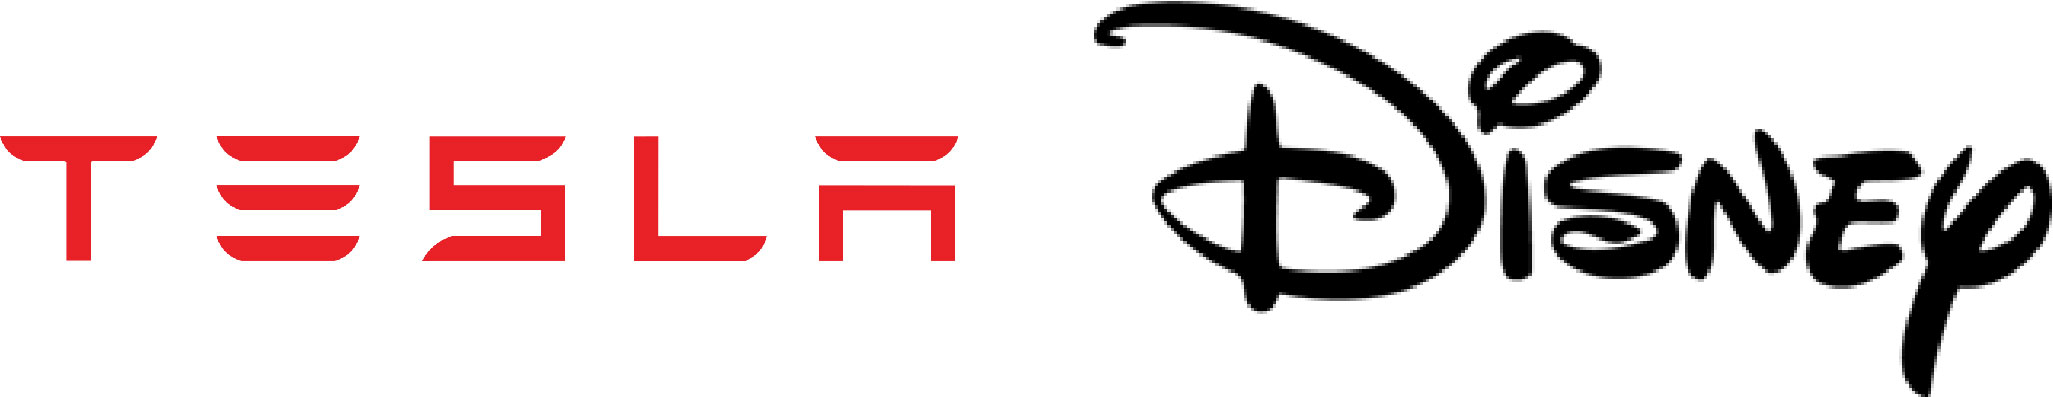 Tesla und Disney Logo